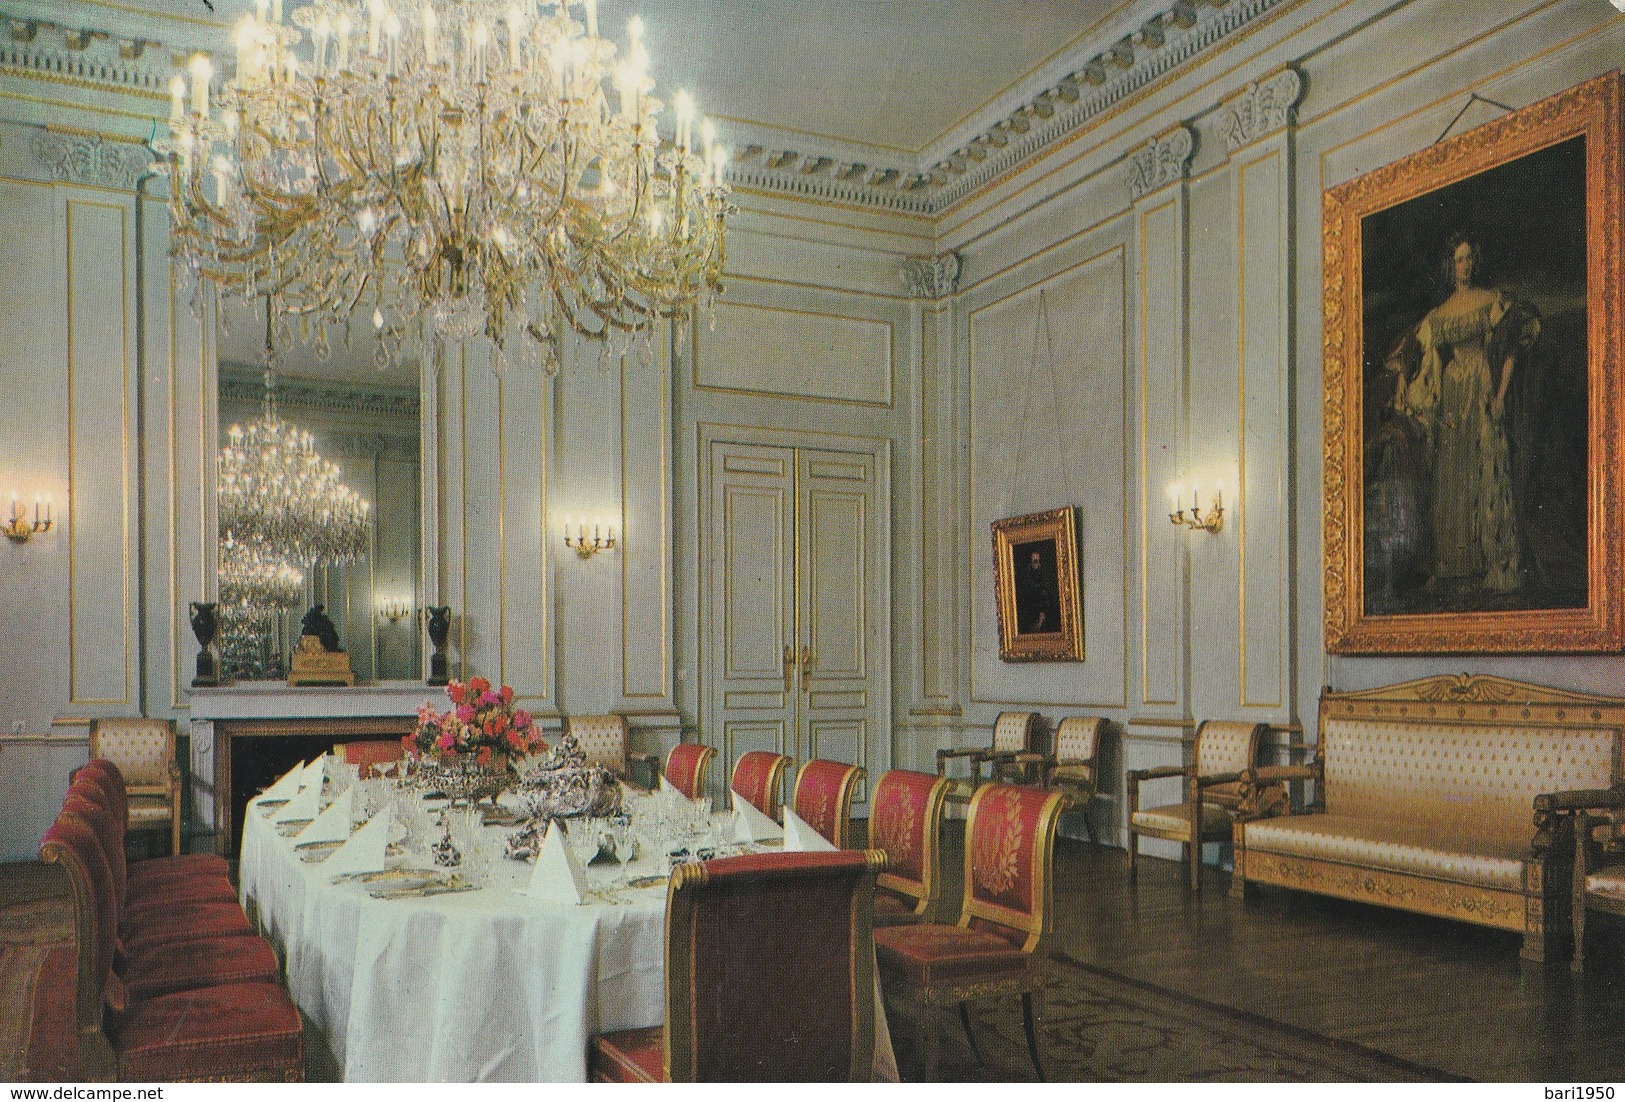 12 POSTKAART- cartoline formato grande del Palazzo Reale di Bruxelles